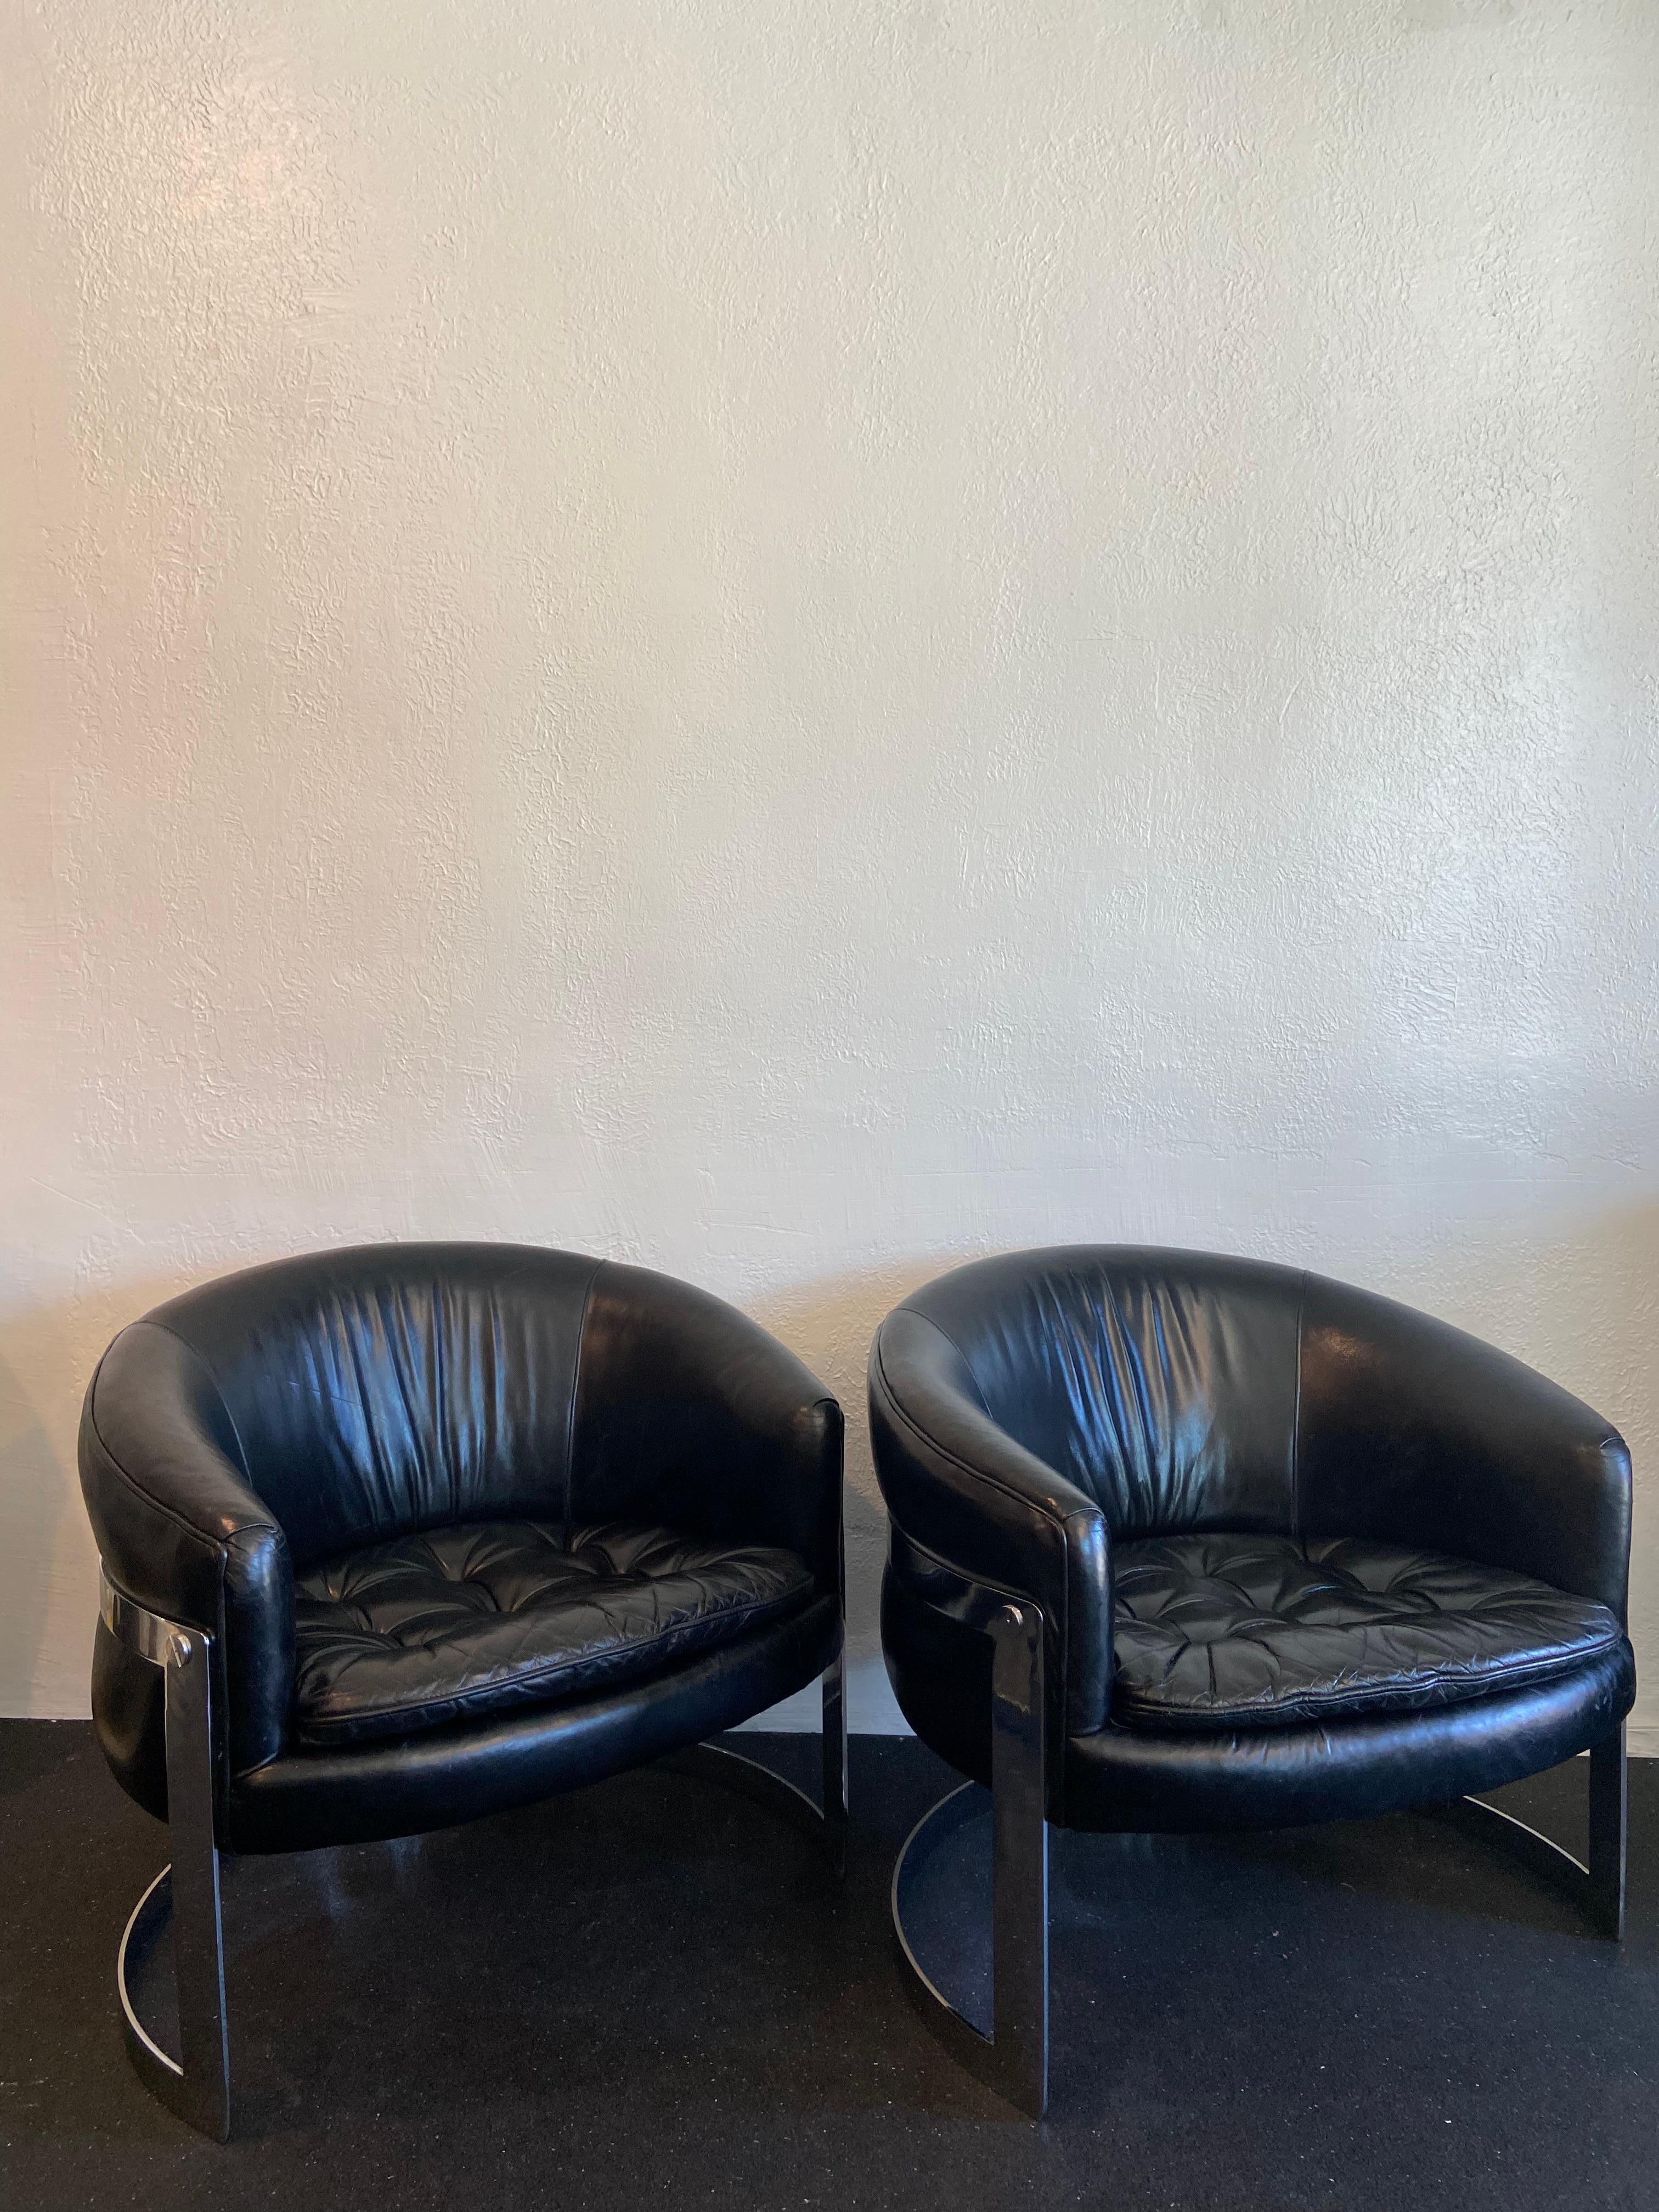 Paire de chaises longues en chrome de style Milo Baughman en cuir noir. Les chaises ne conservent pas les labels d'origine. Les chaises sont recouvertes de leur cuir d'origine qui s'est magnifiquement patiné au fil des ans (voir les